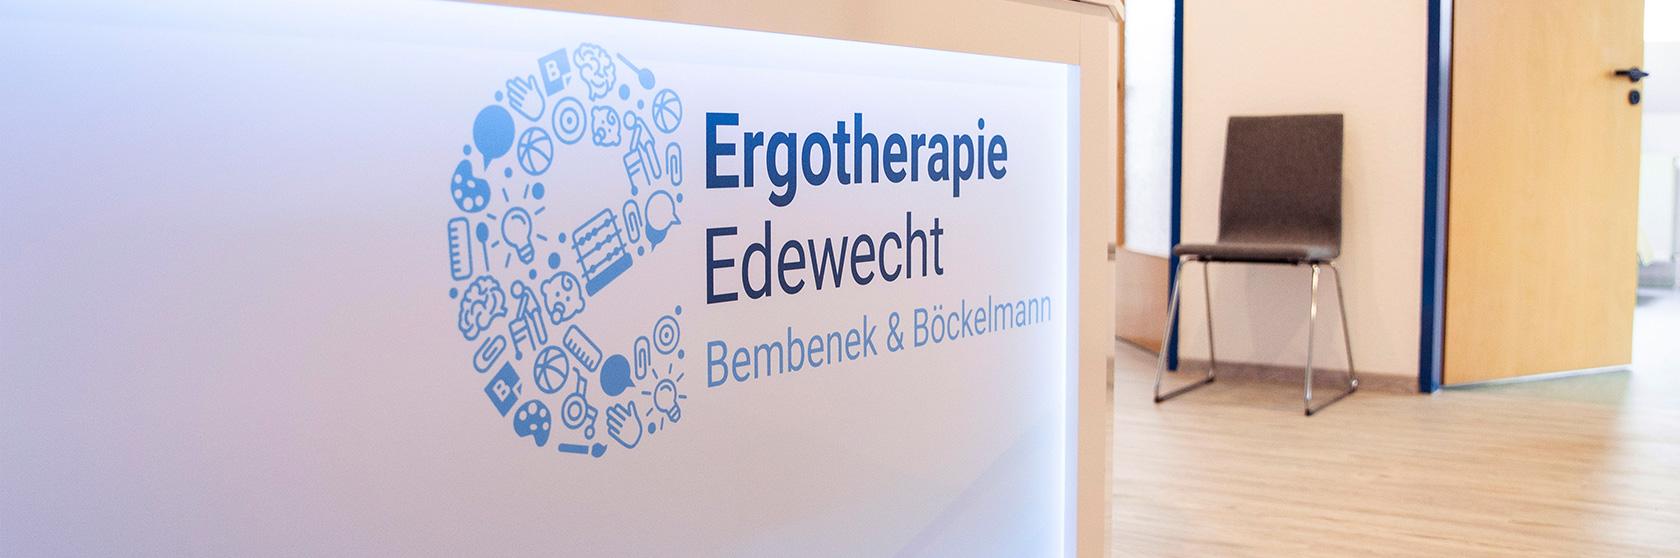 Ergotherapie Edewecht - Bembenek & Böckelmann